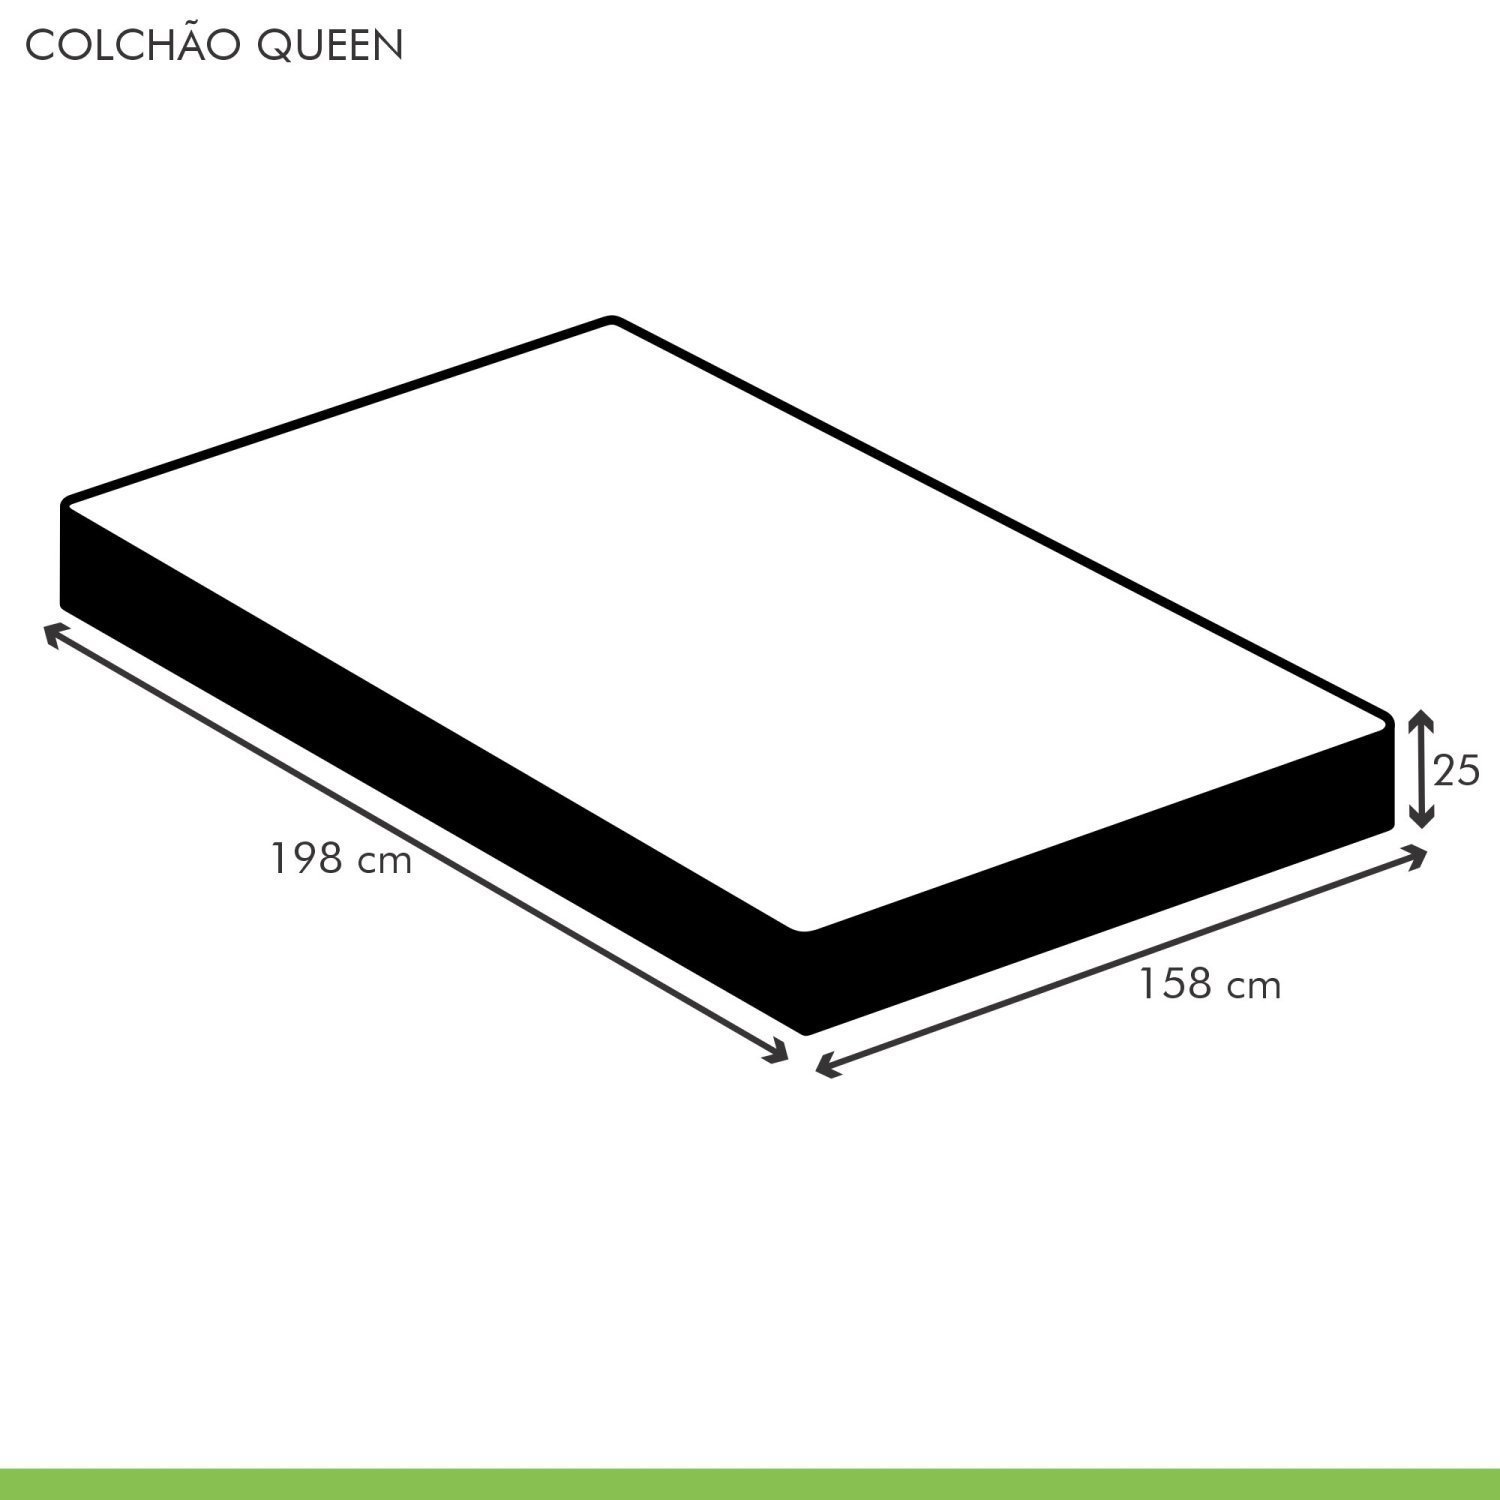 Colchão Queen Unique D45 Duoface 25x158x198cm  - 5